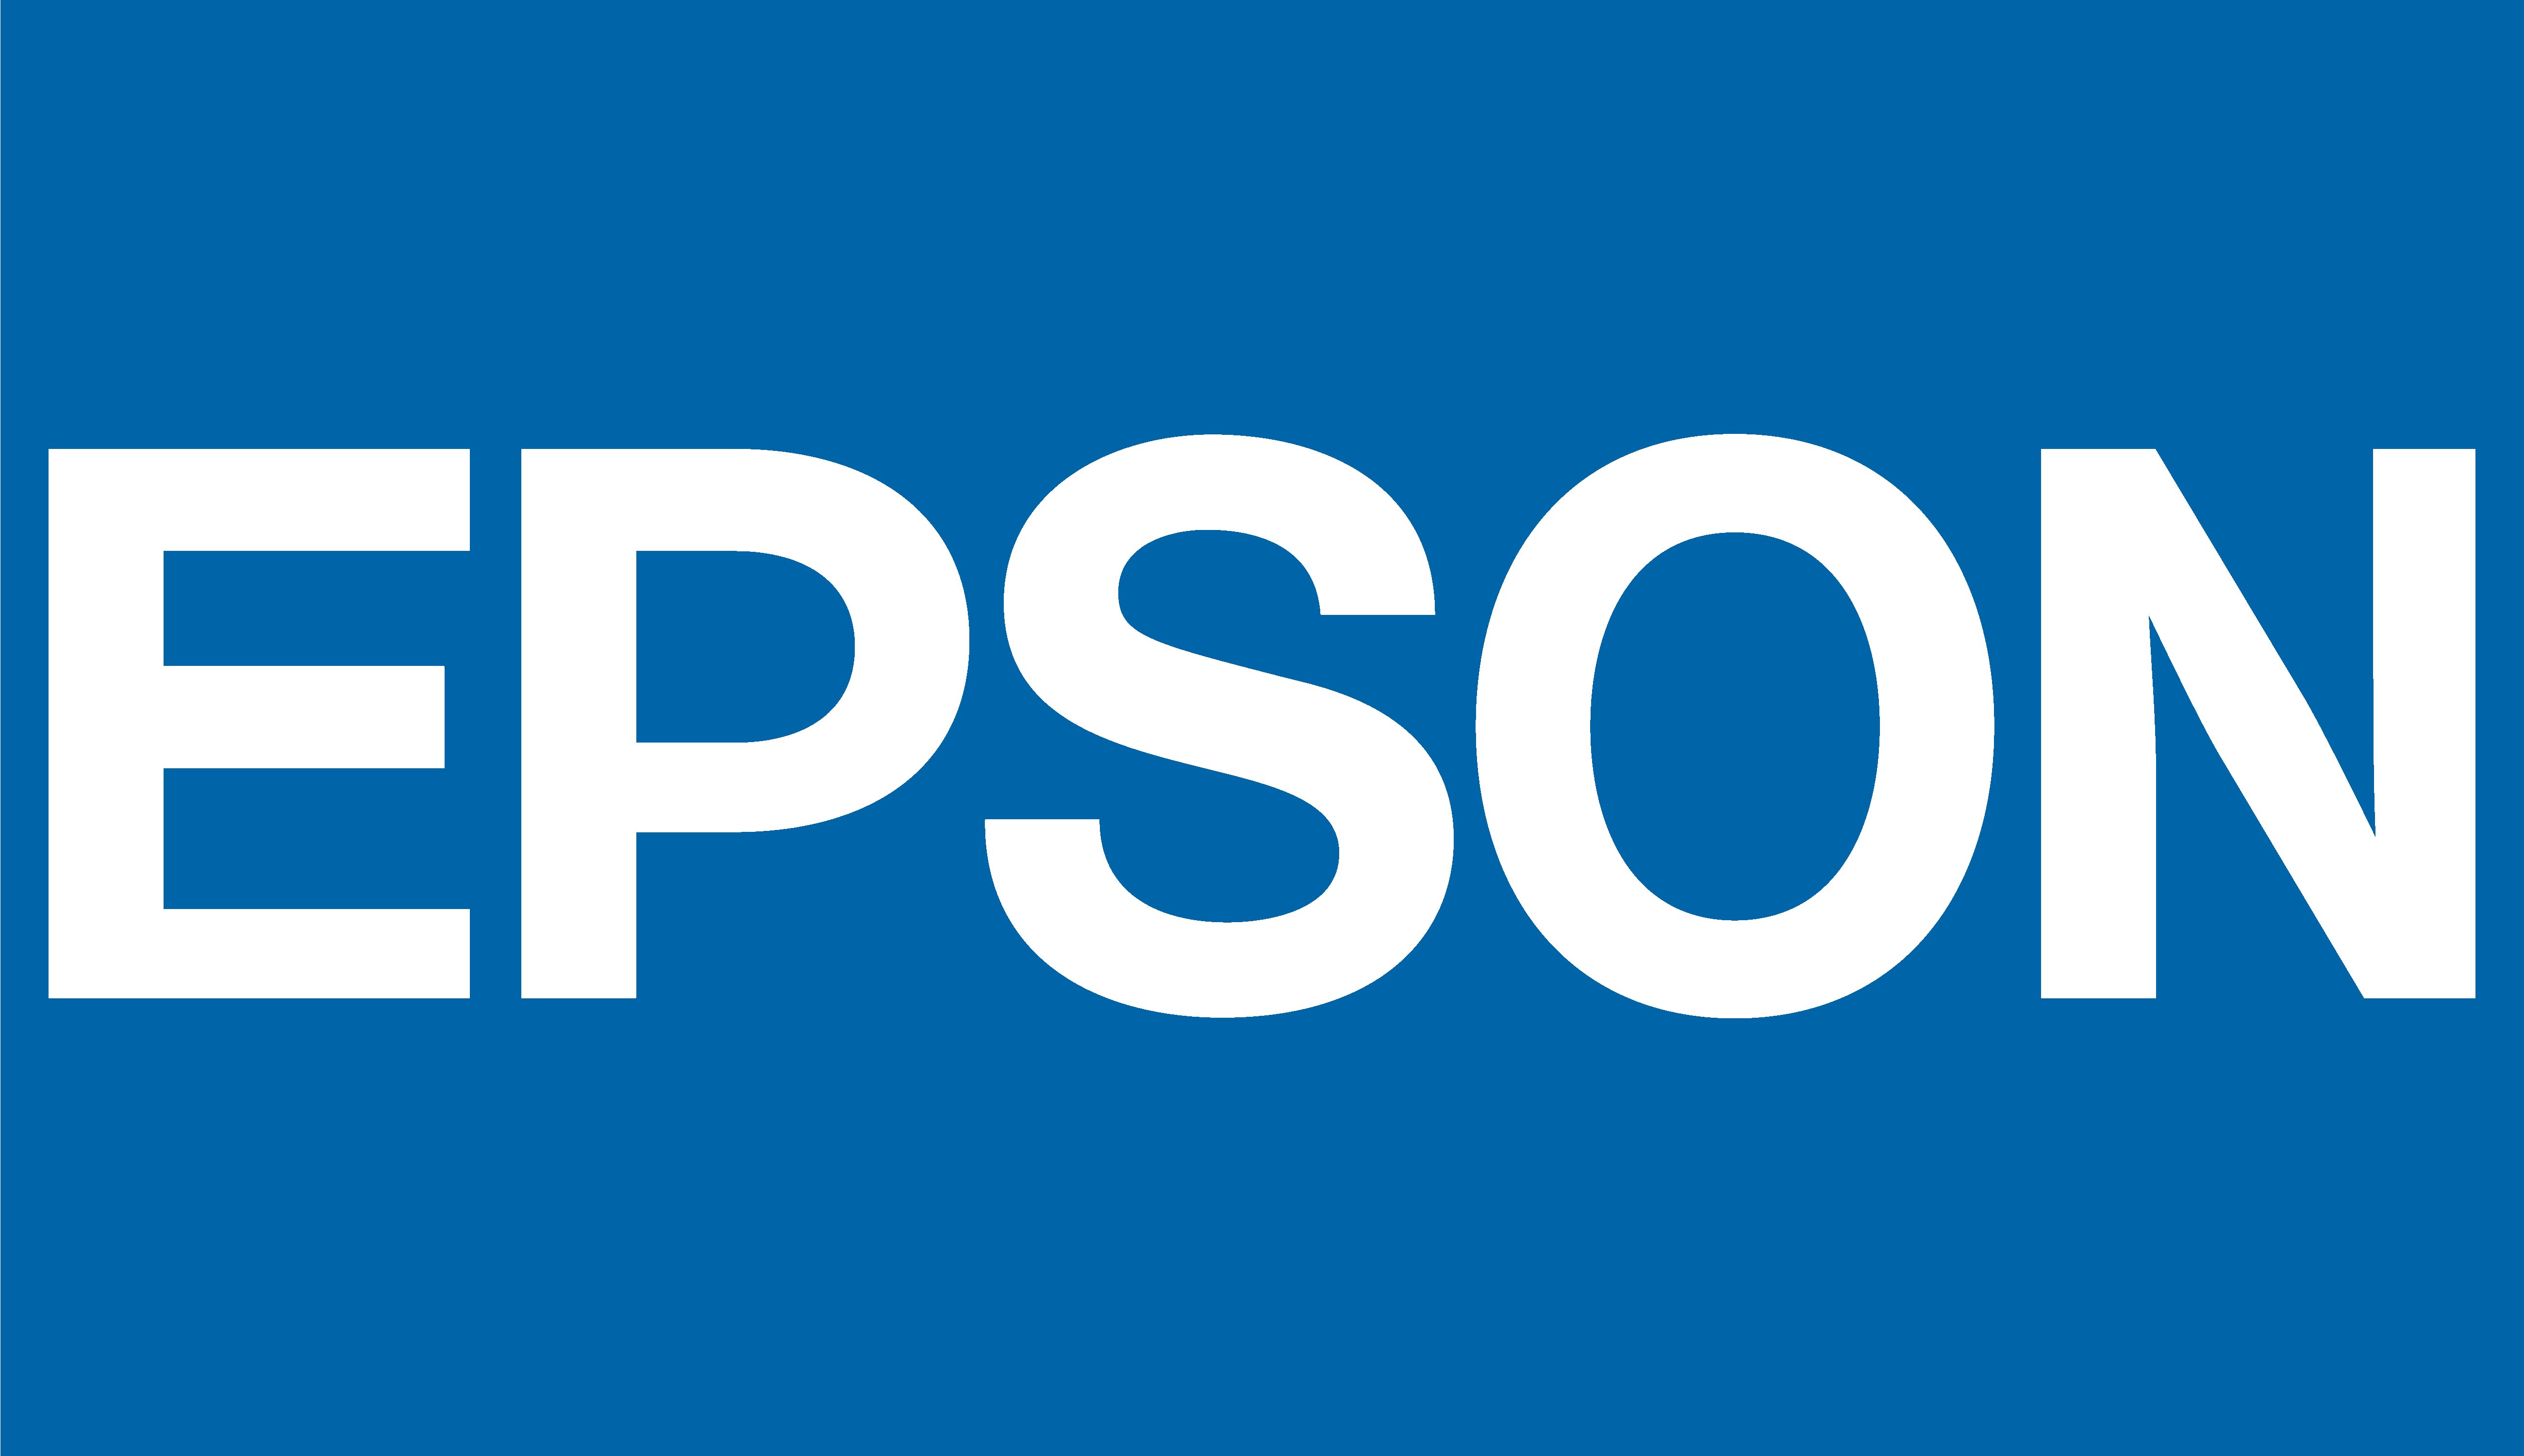 epson logo 8 - Epson Logo